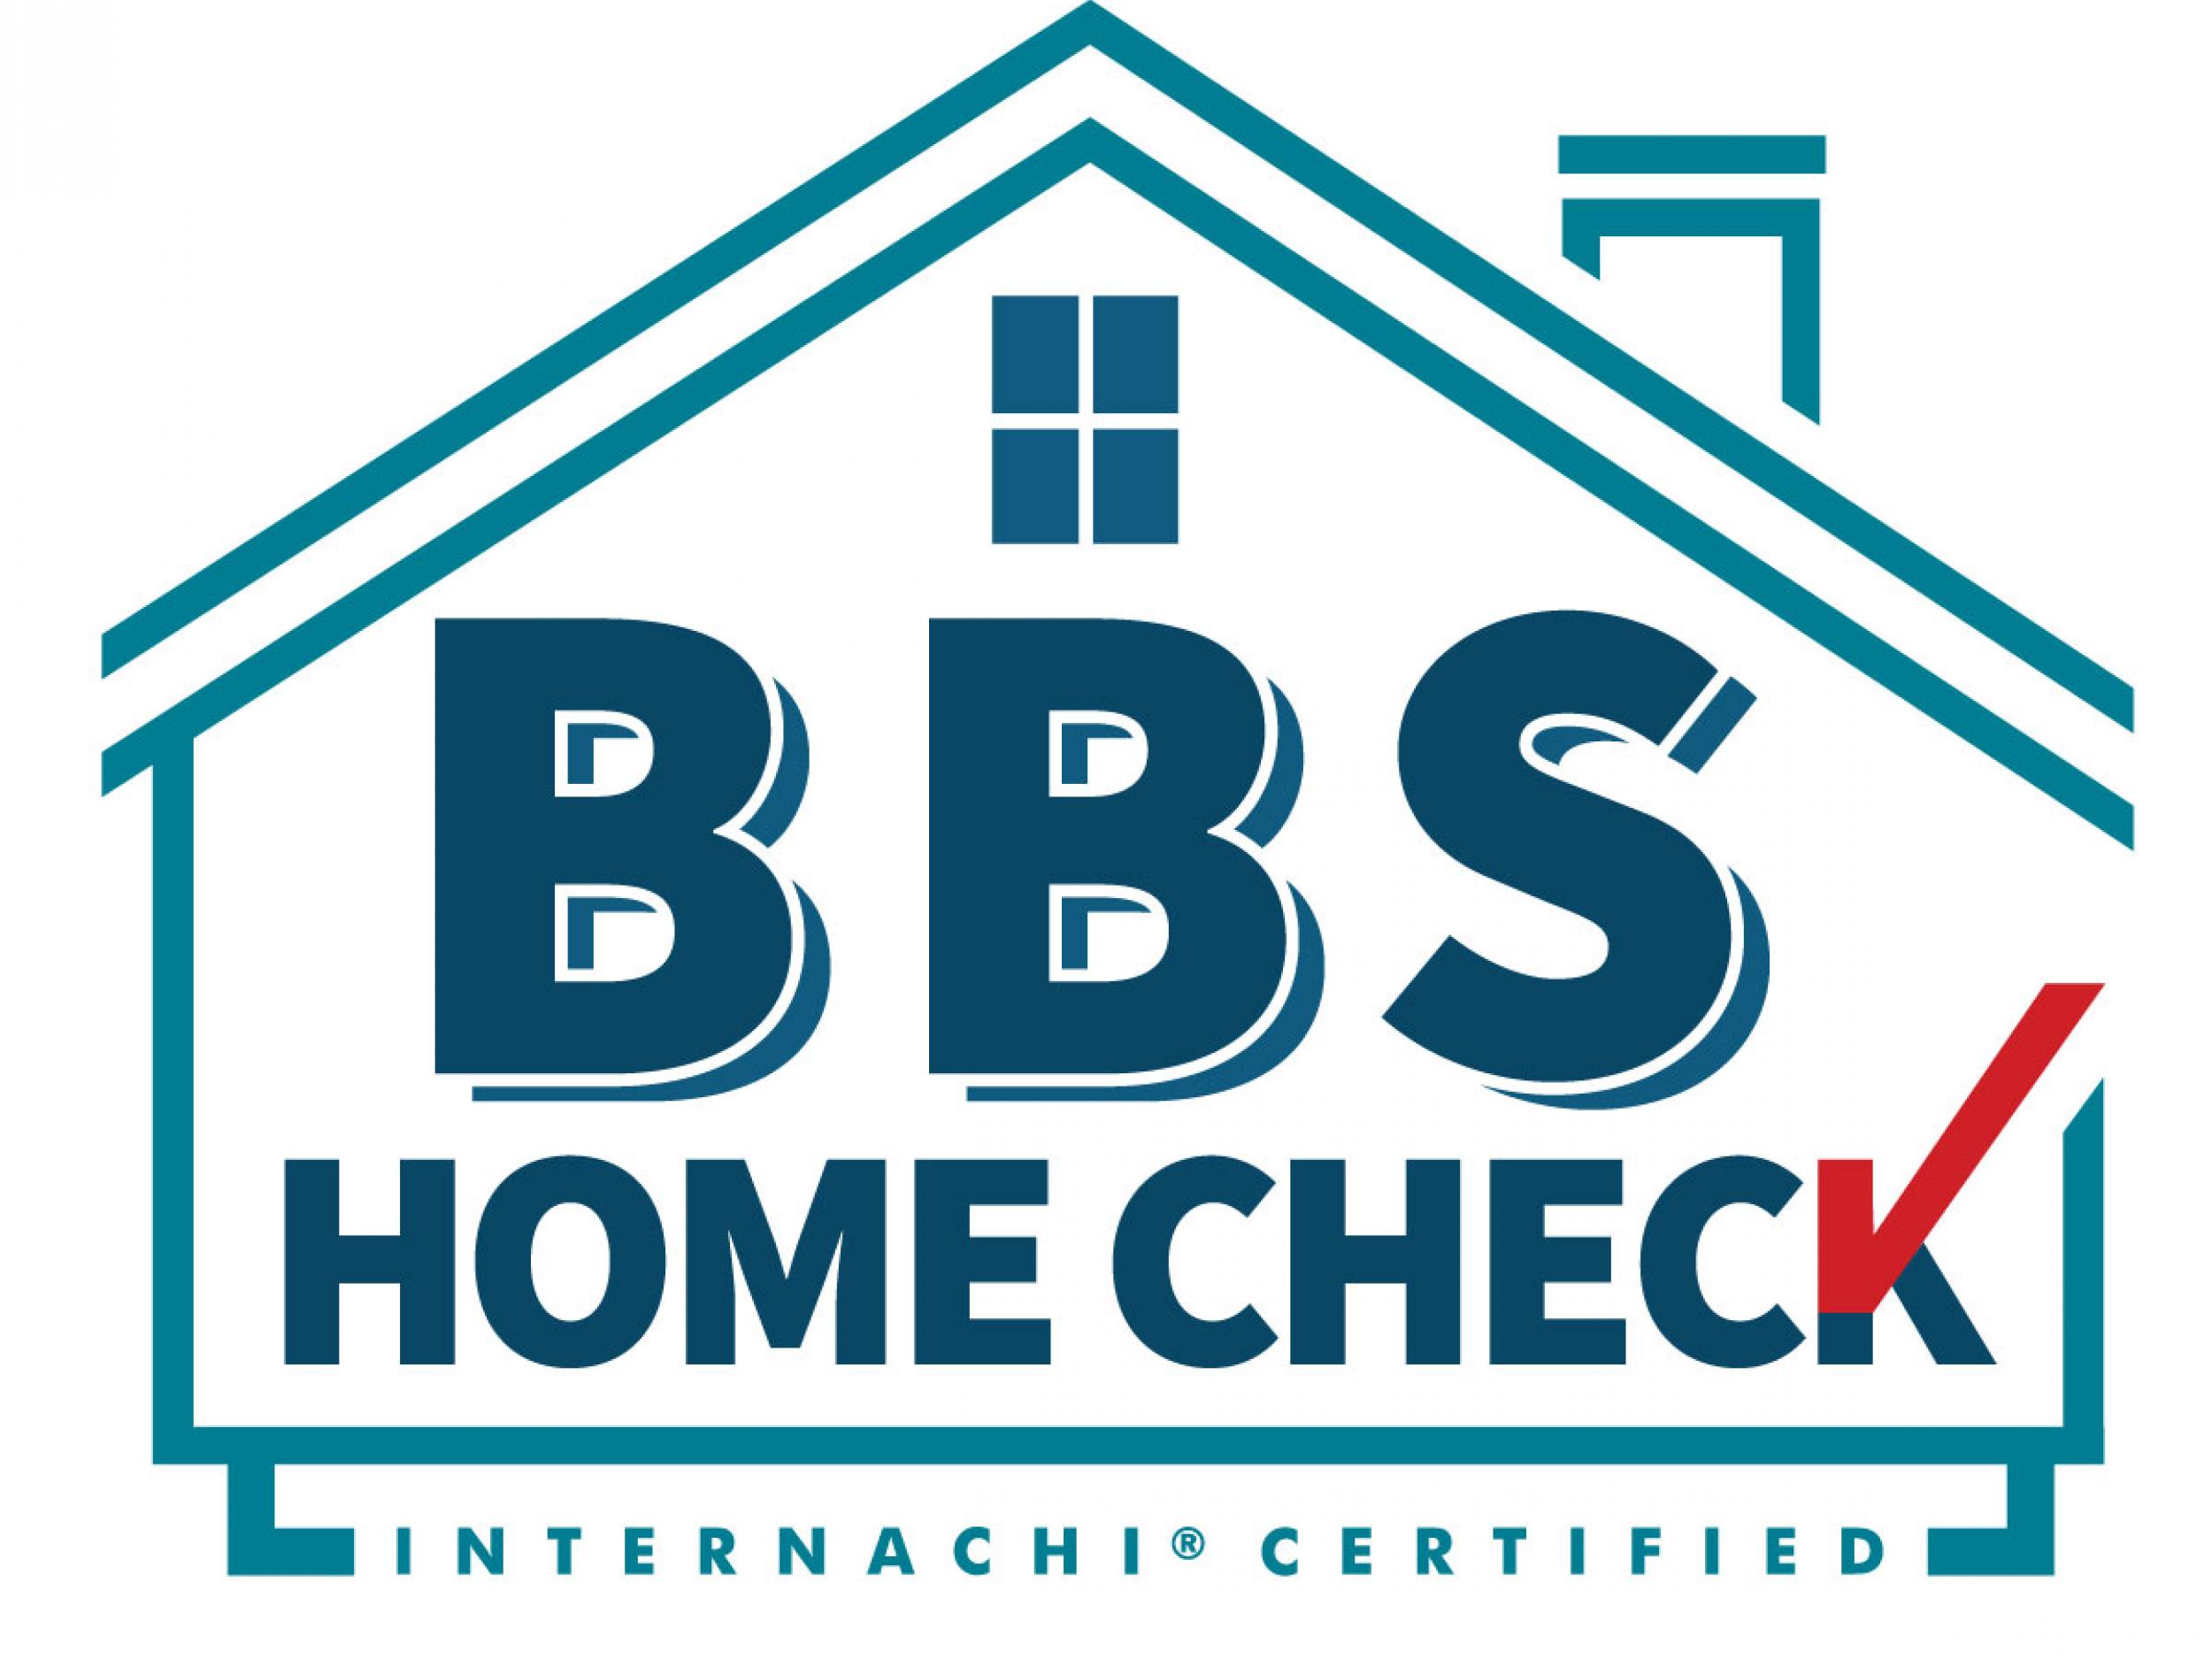 BBS Home Check